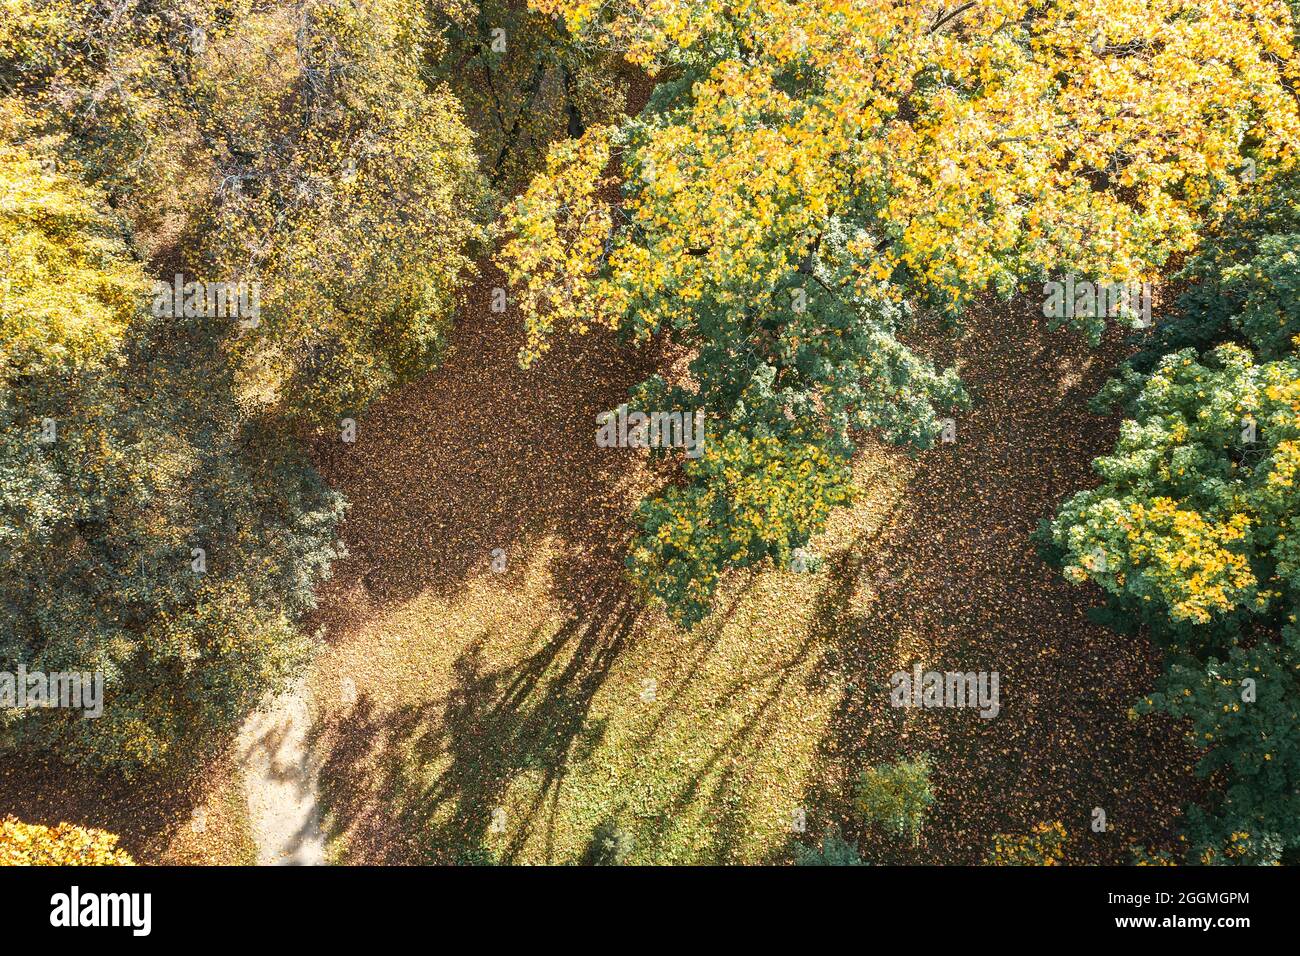 sorvolando un colorato tretop con foglie gialle nella soleggiata giornata autunnale. fotografia con droni. Foto Stock